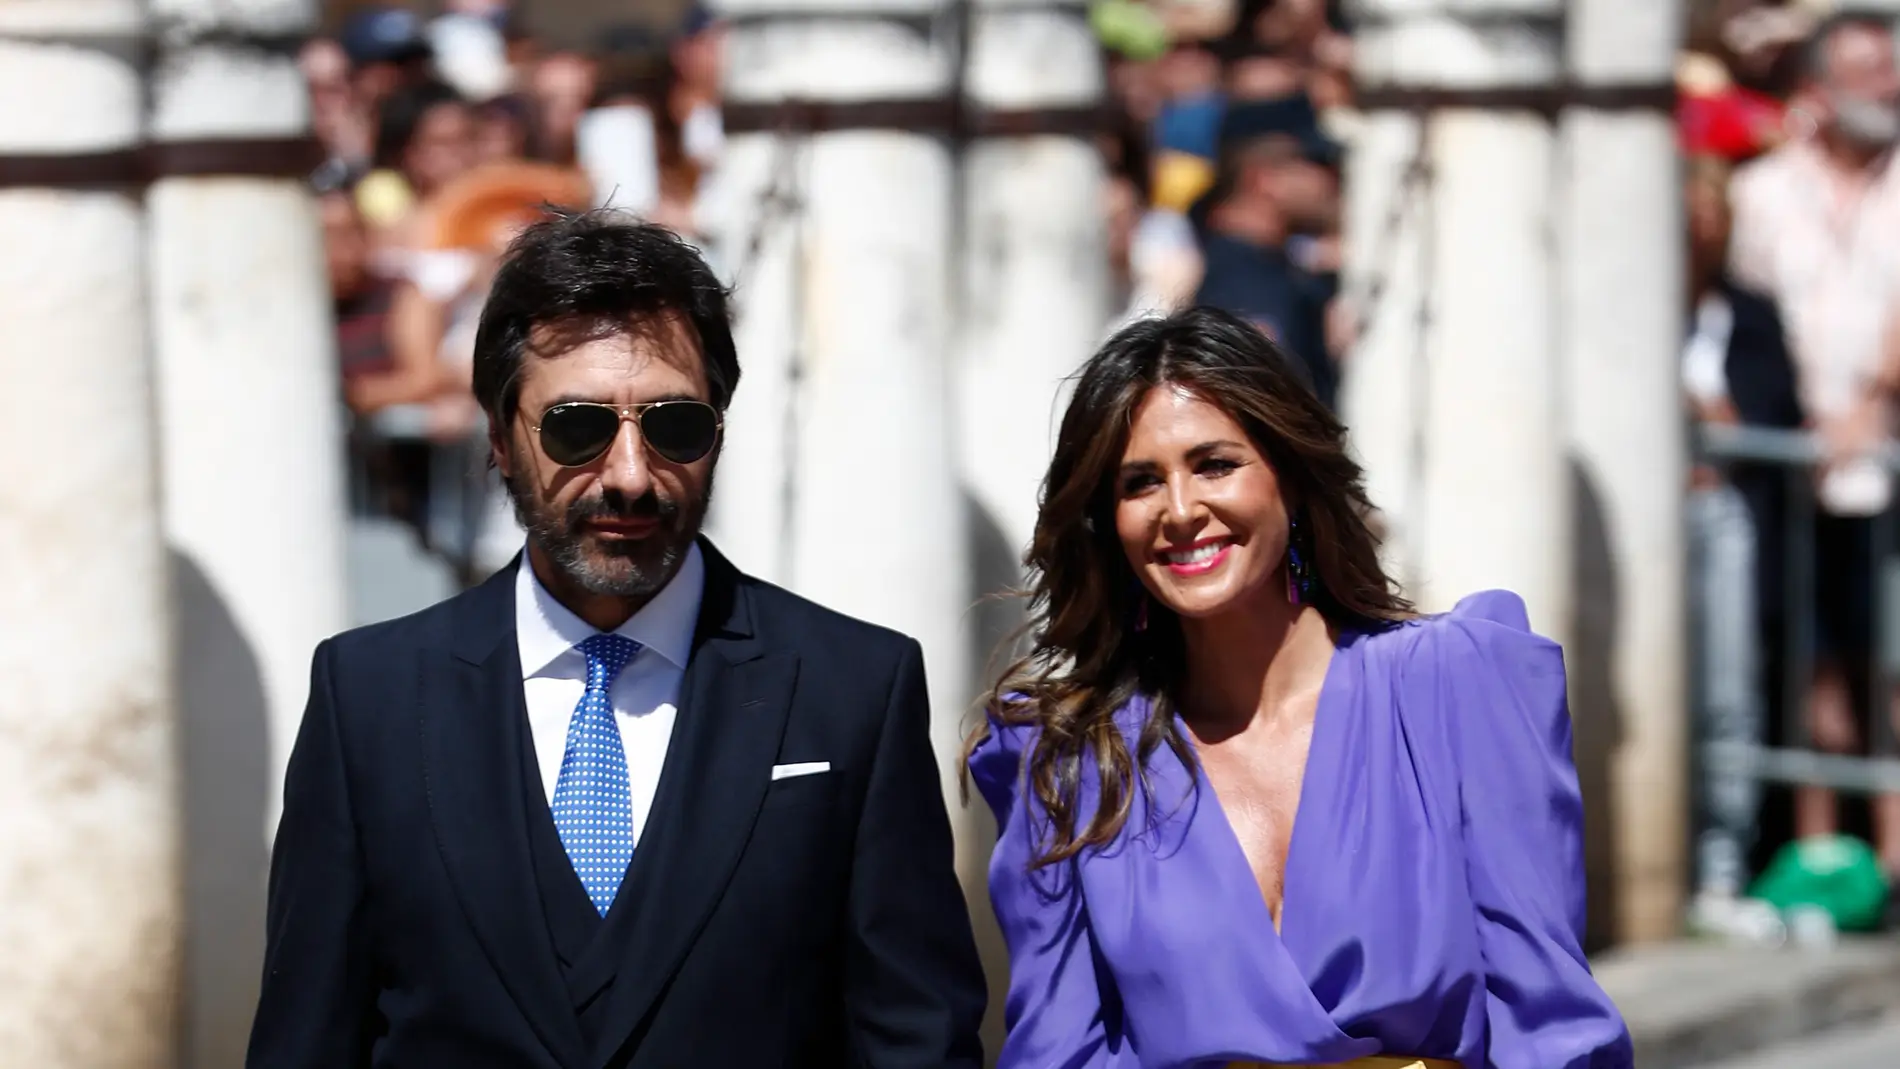 Nuria Roca y Juan del Val llegando a la boda de Pilar Rubio y Sergio Ramos